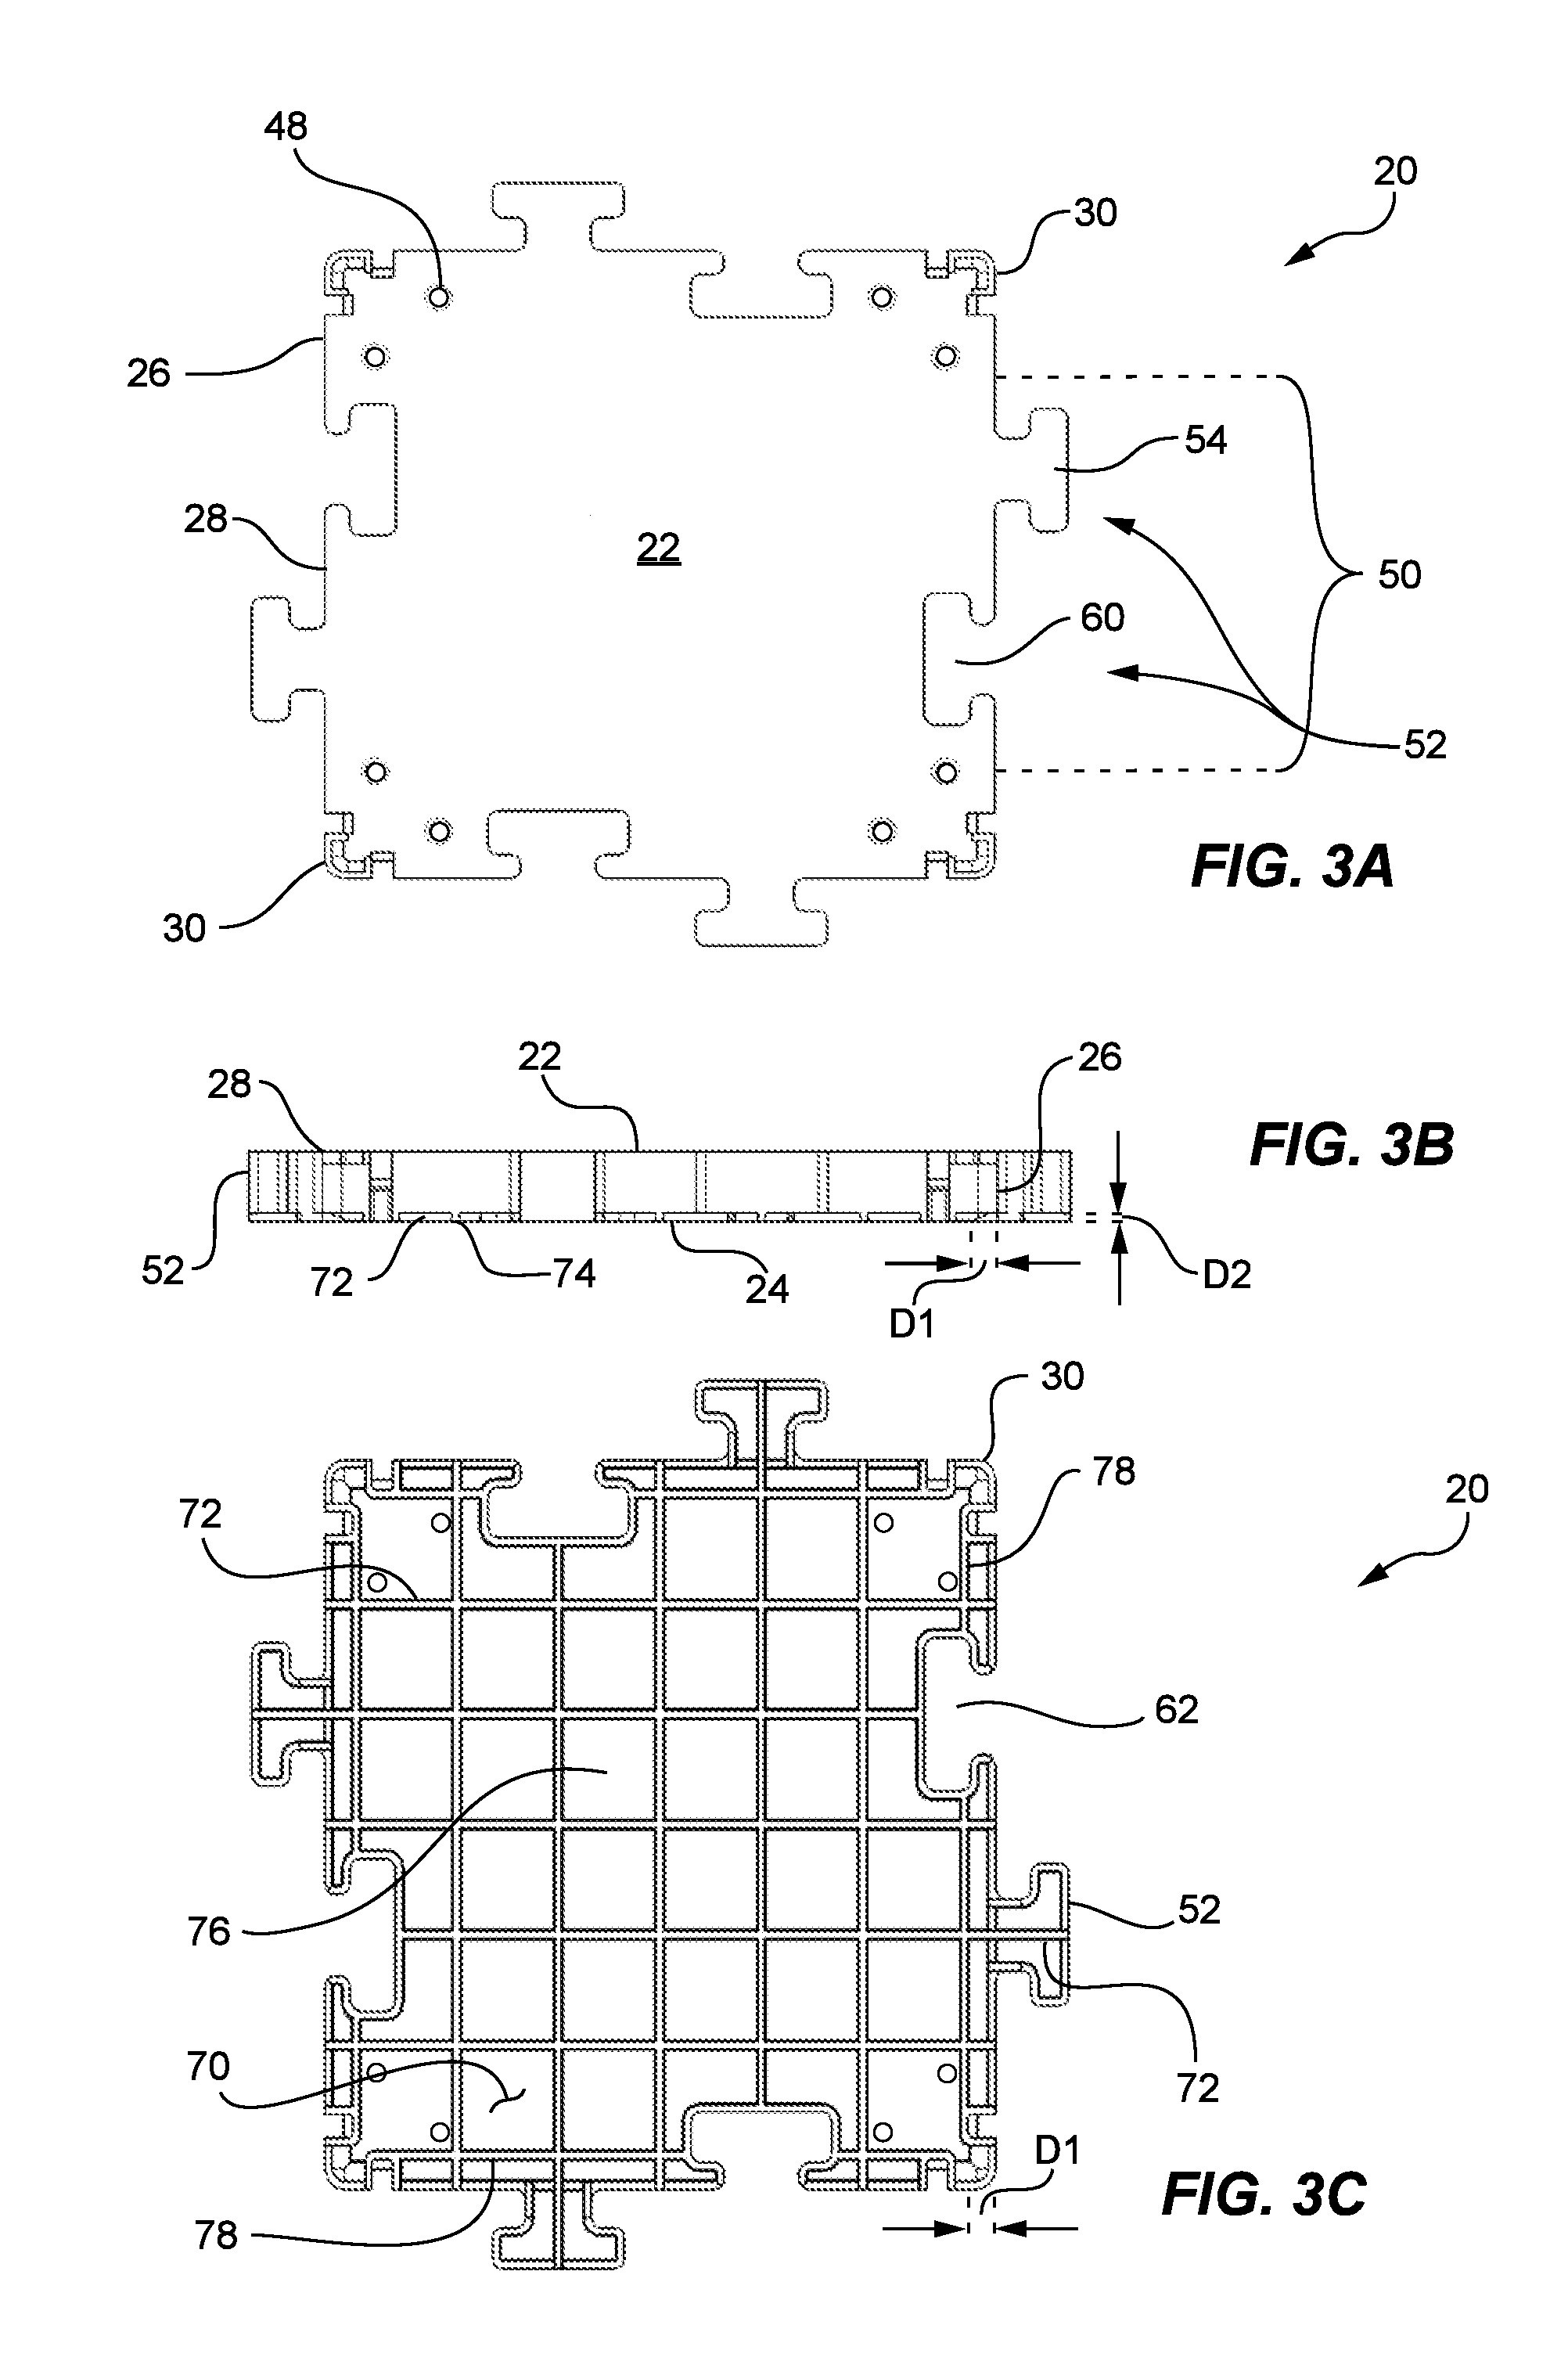 Modular sub-flooring system